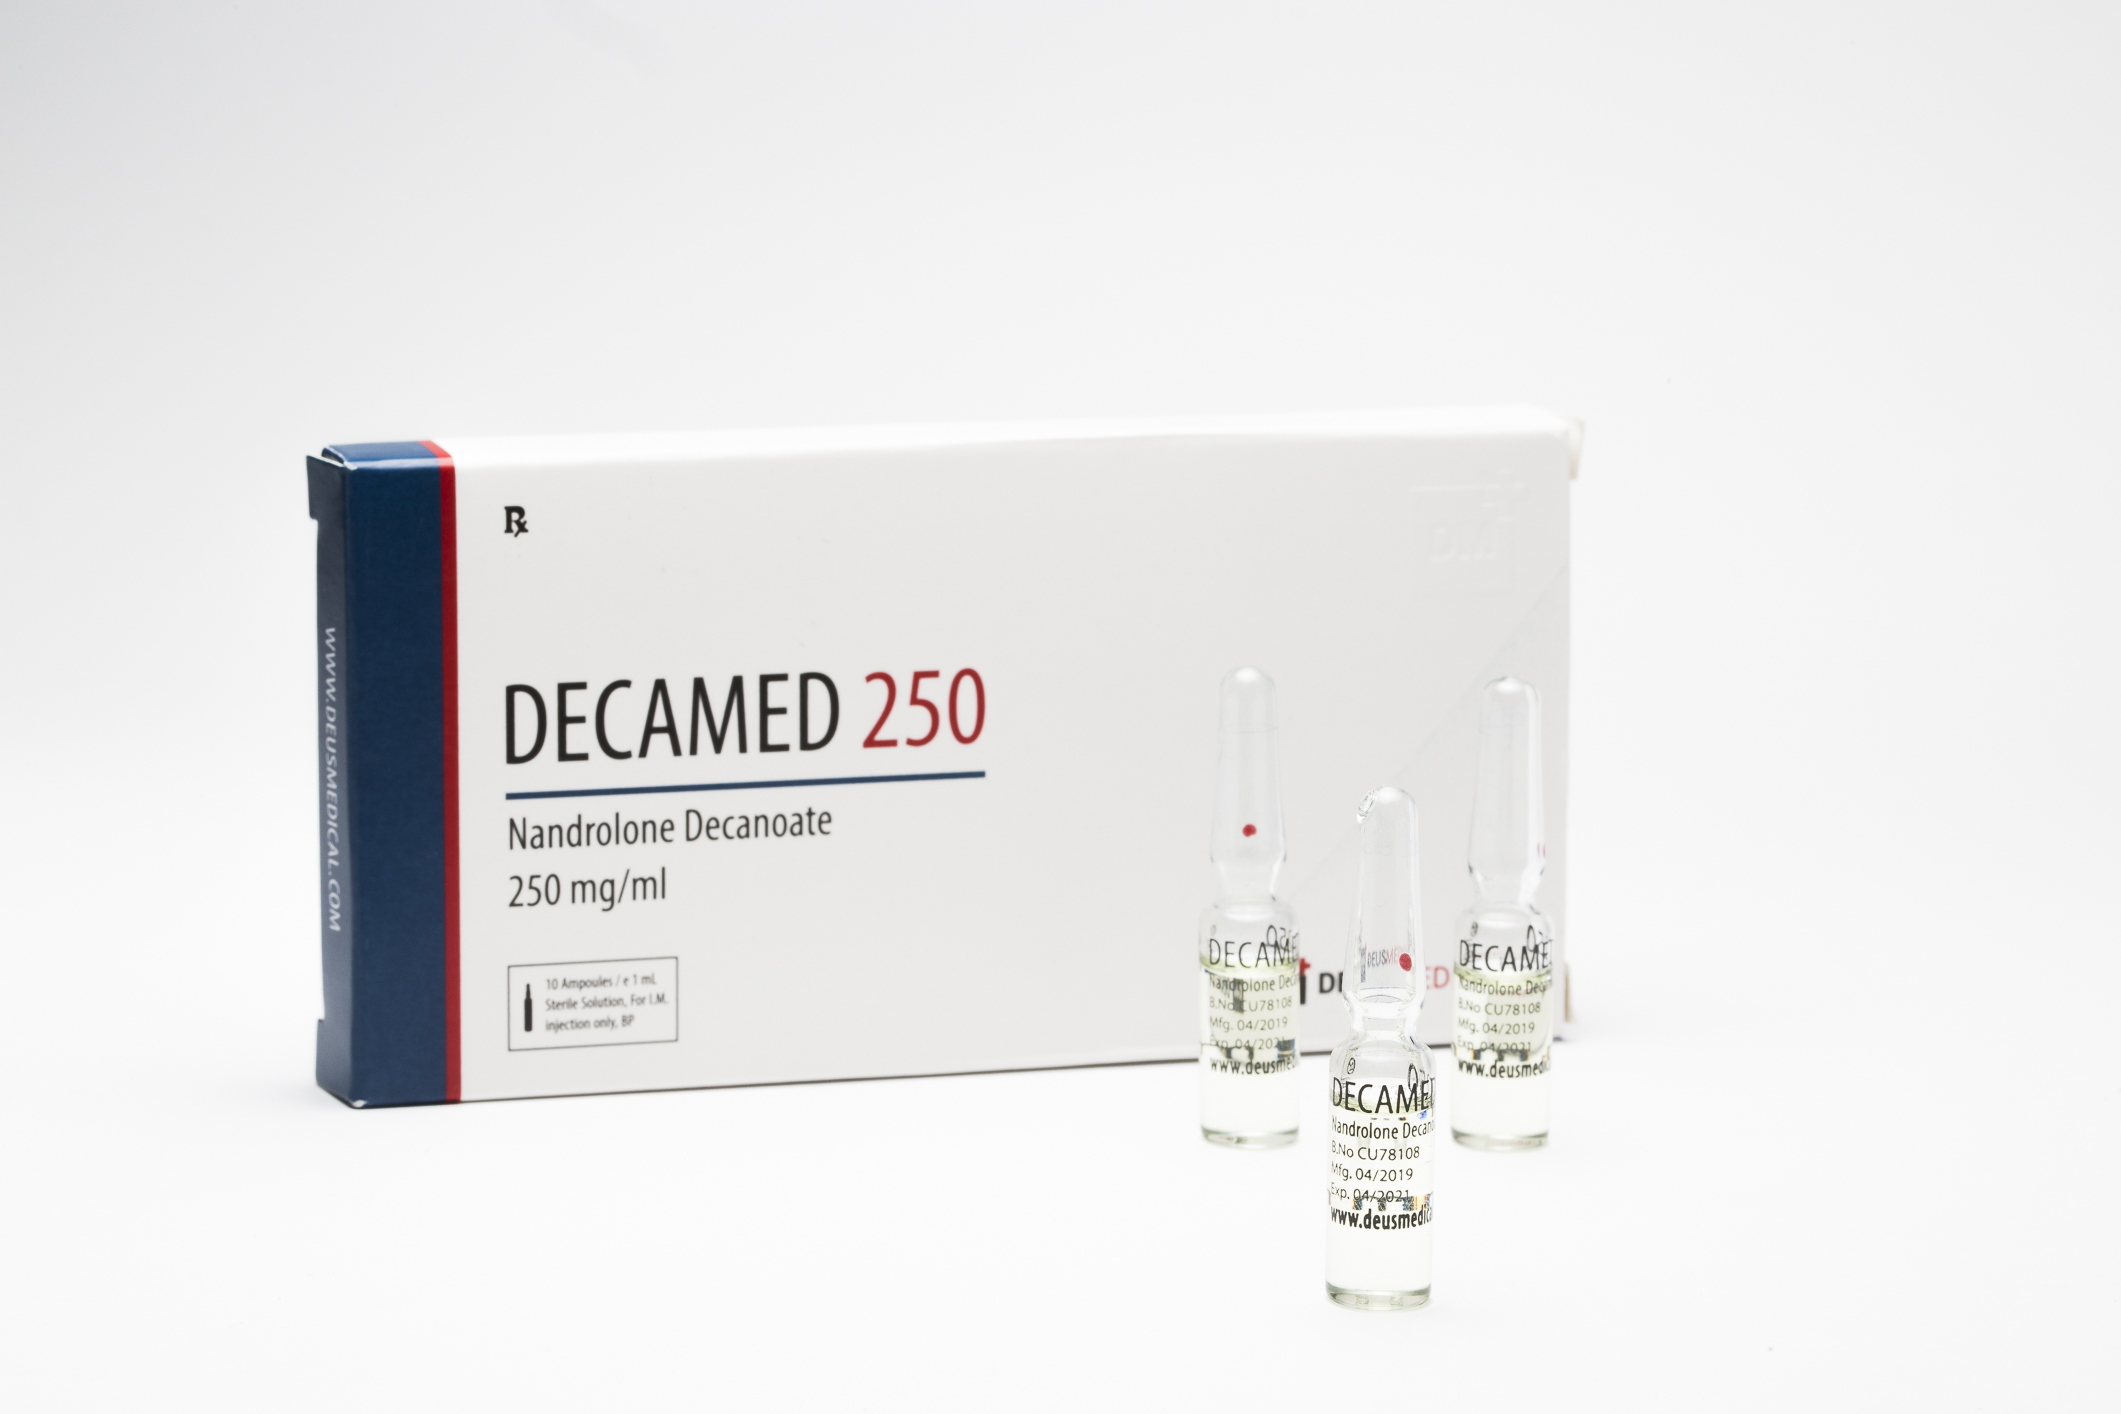 DECAMED 250 (decanoato de nandrolona) DeusMedical 10ml [250mg/ml]